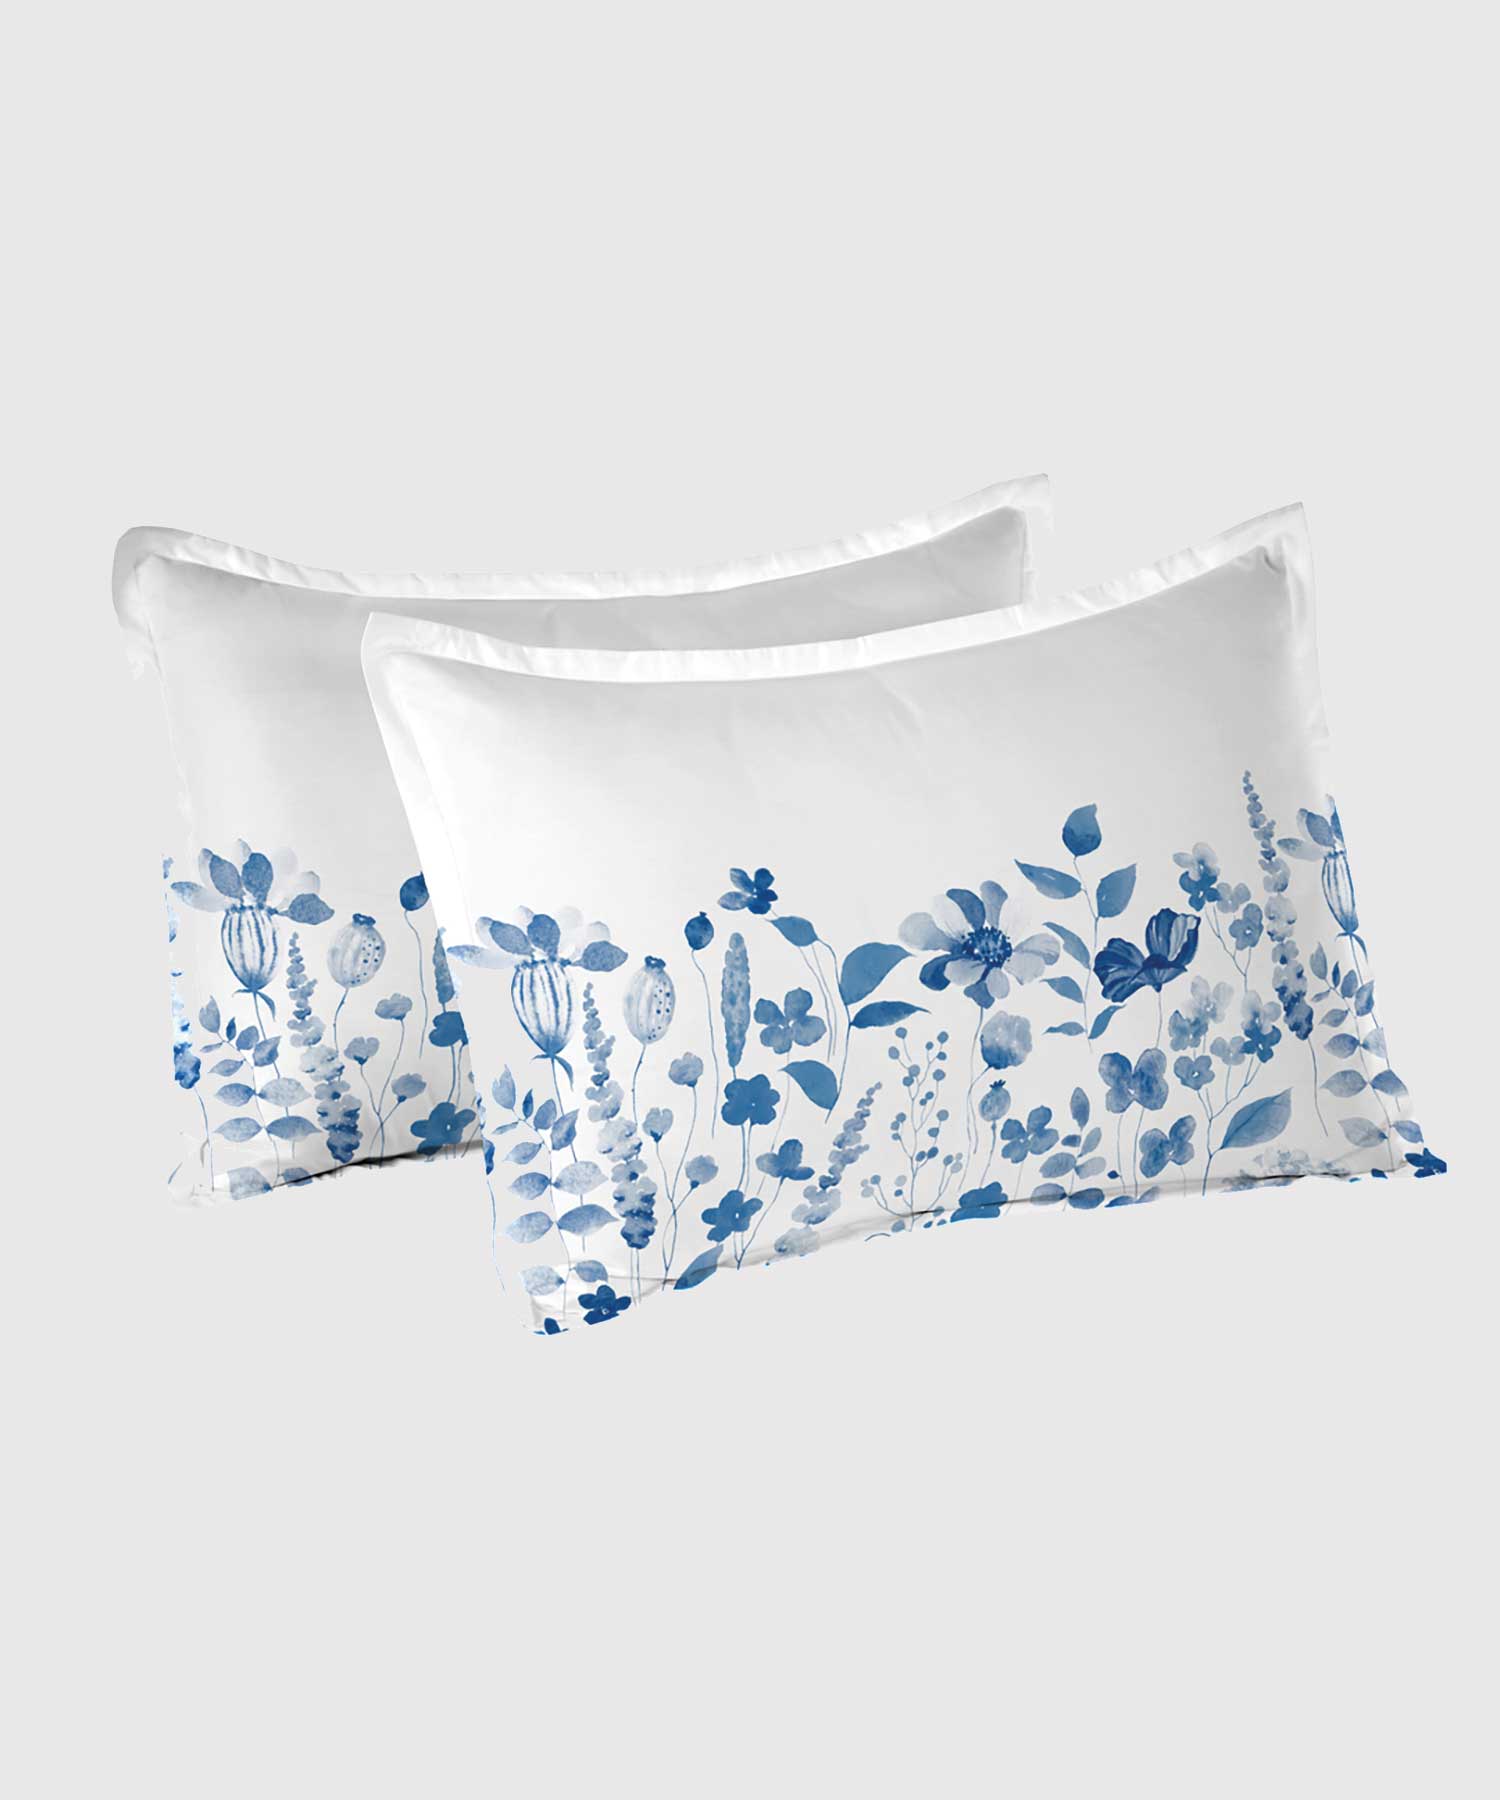 Soft Comfort Pillowcase Set,210 TC, 100% Cotton, Sussana